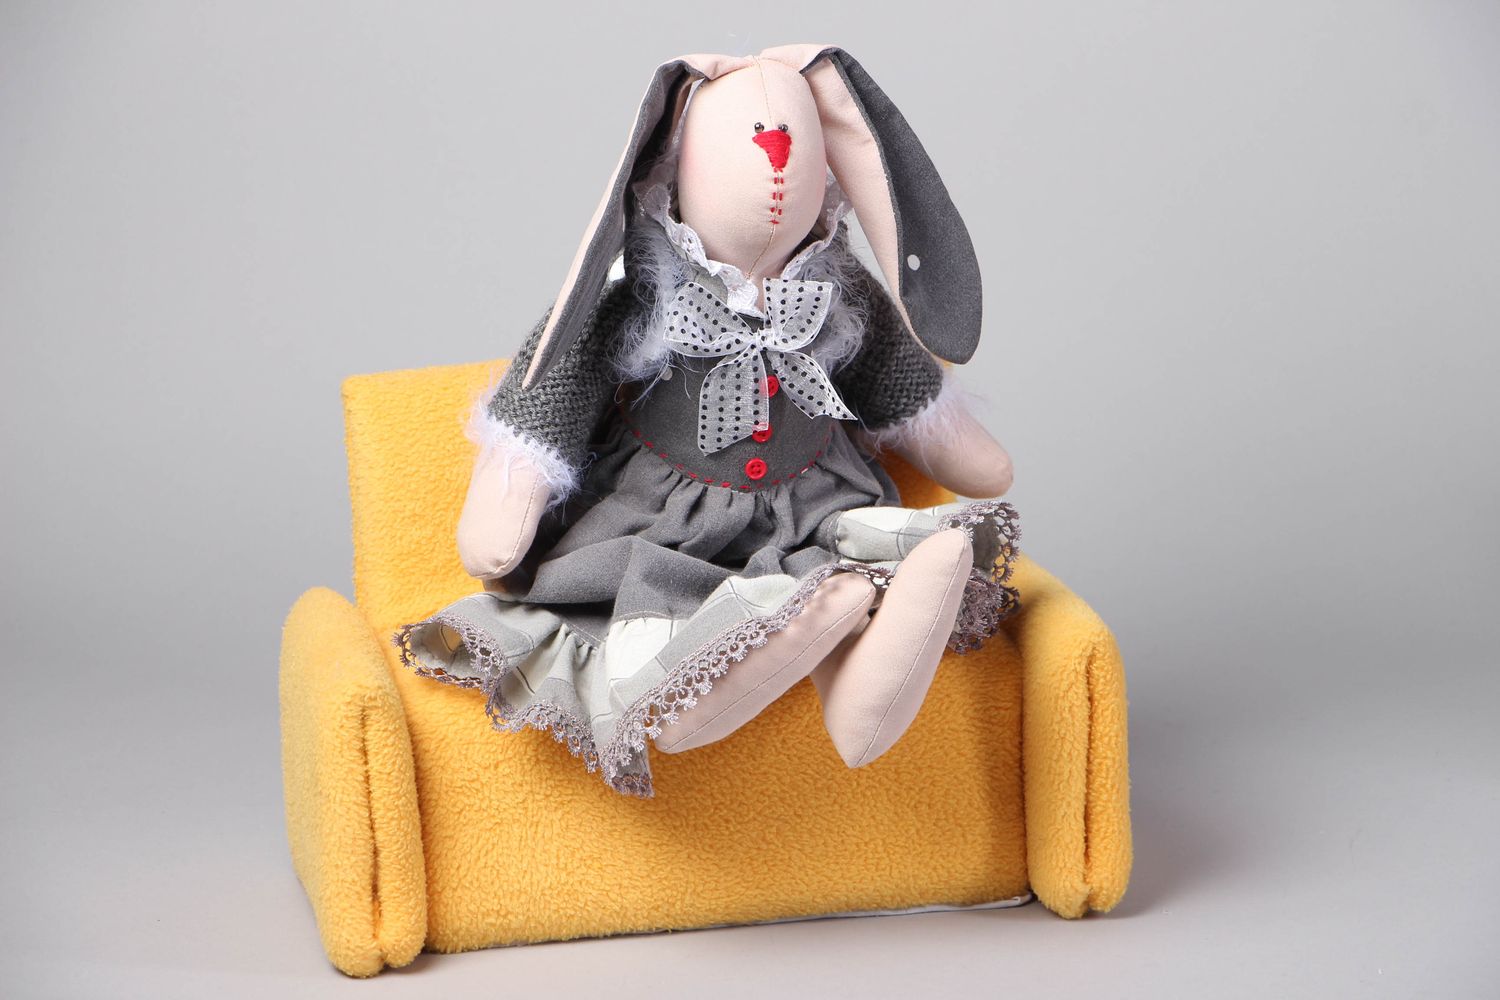 Textil Spielzeug Hase auf Sofa foto 1